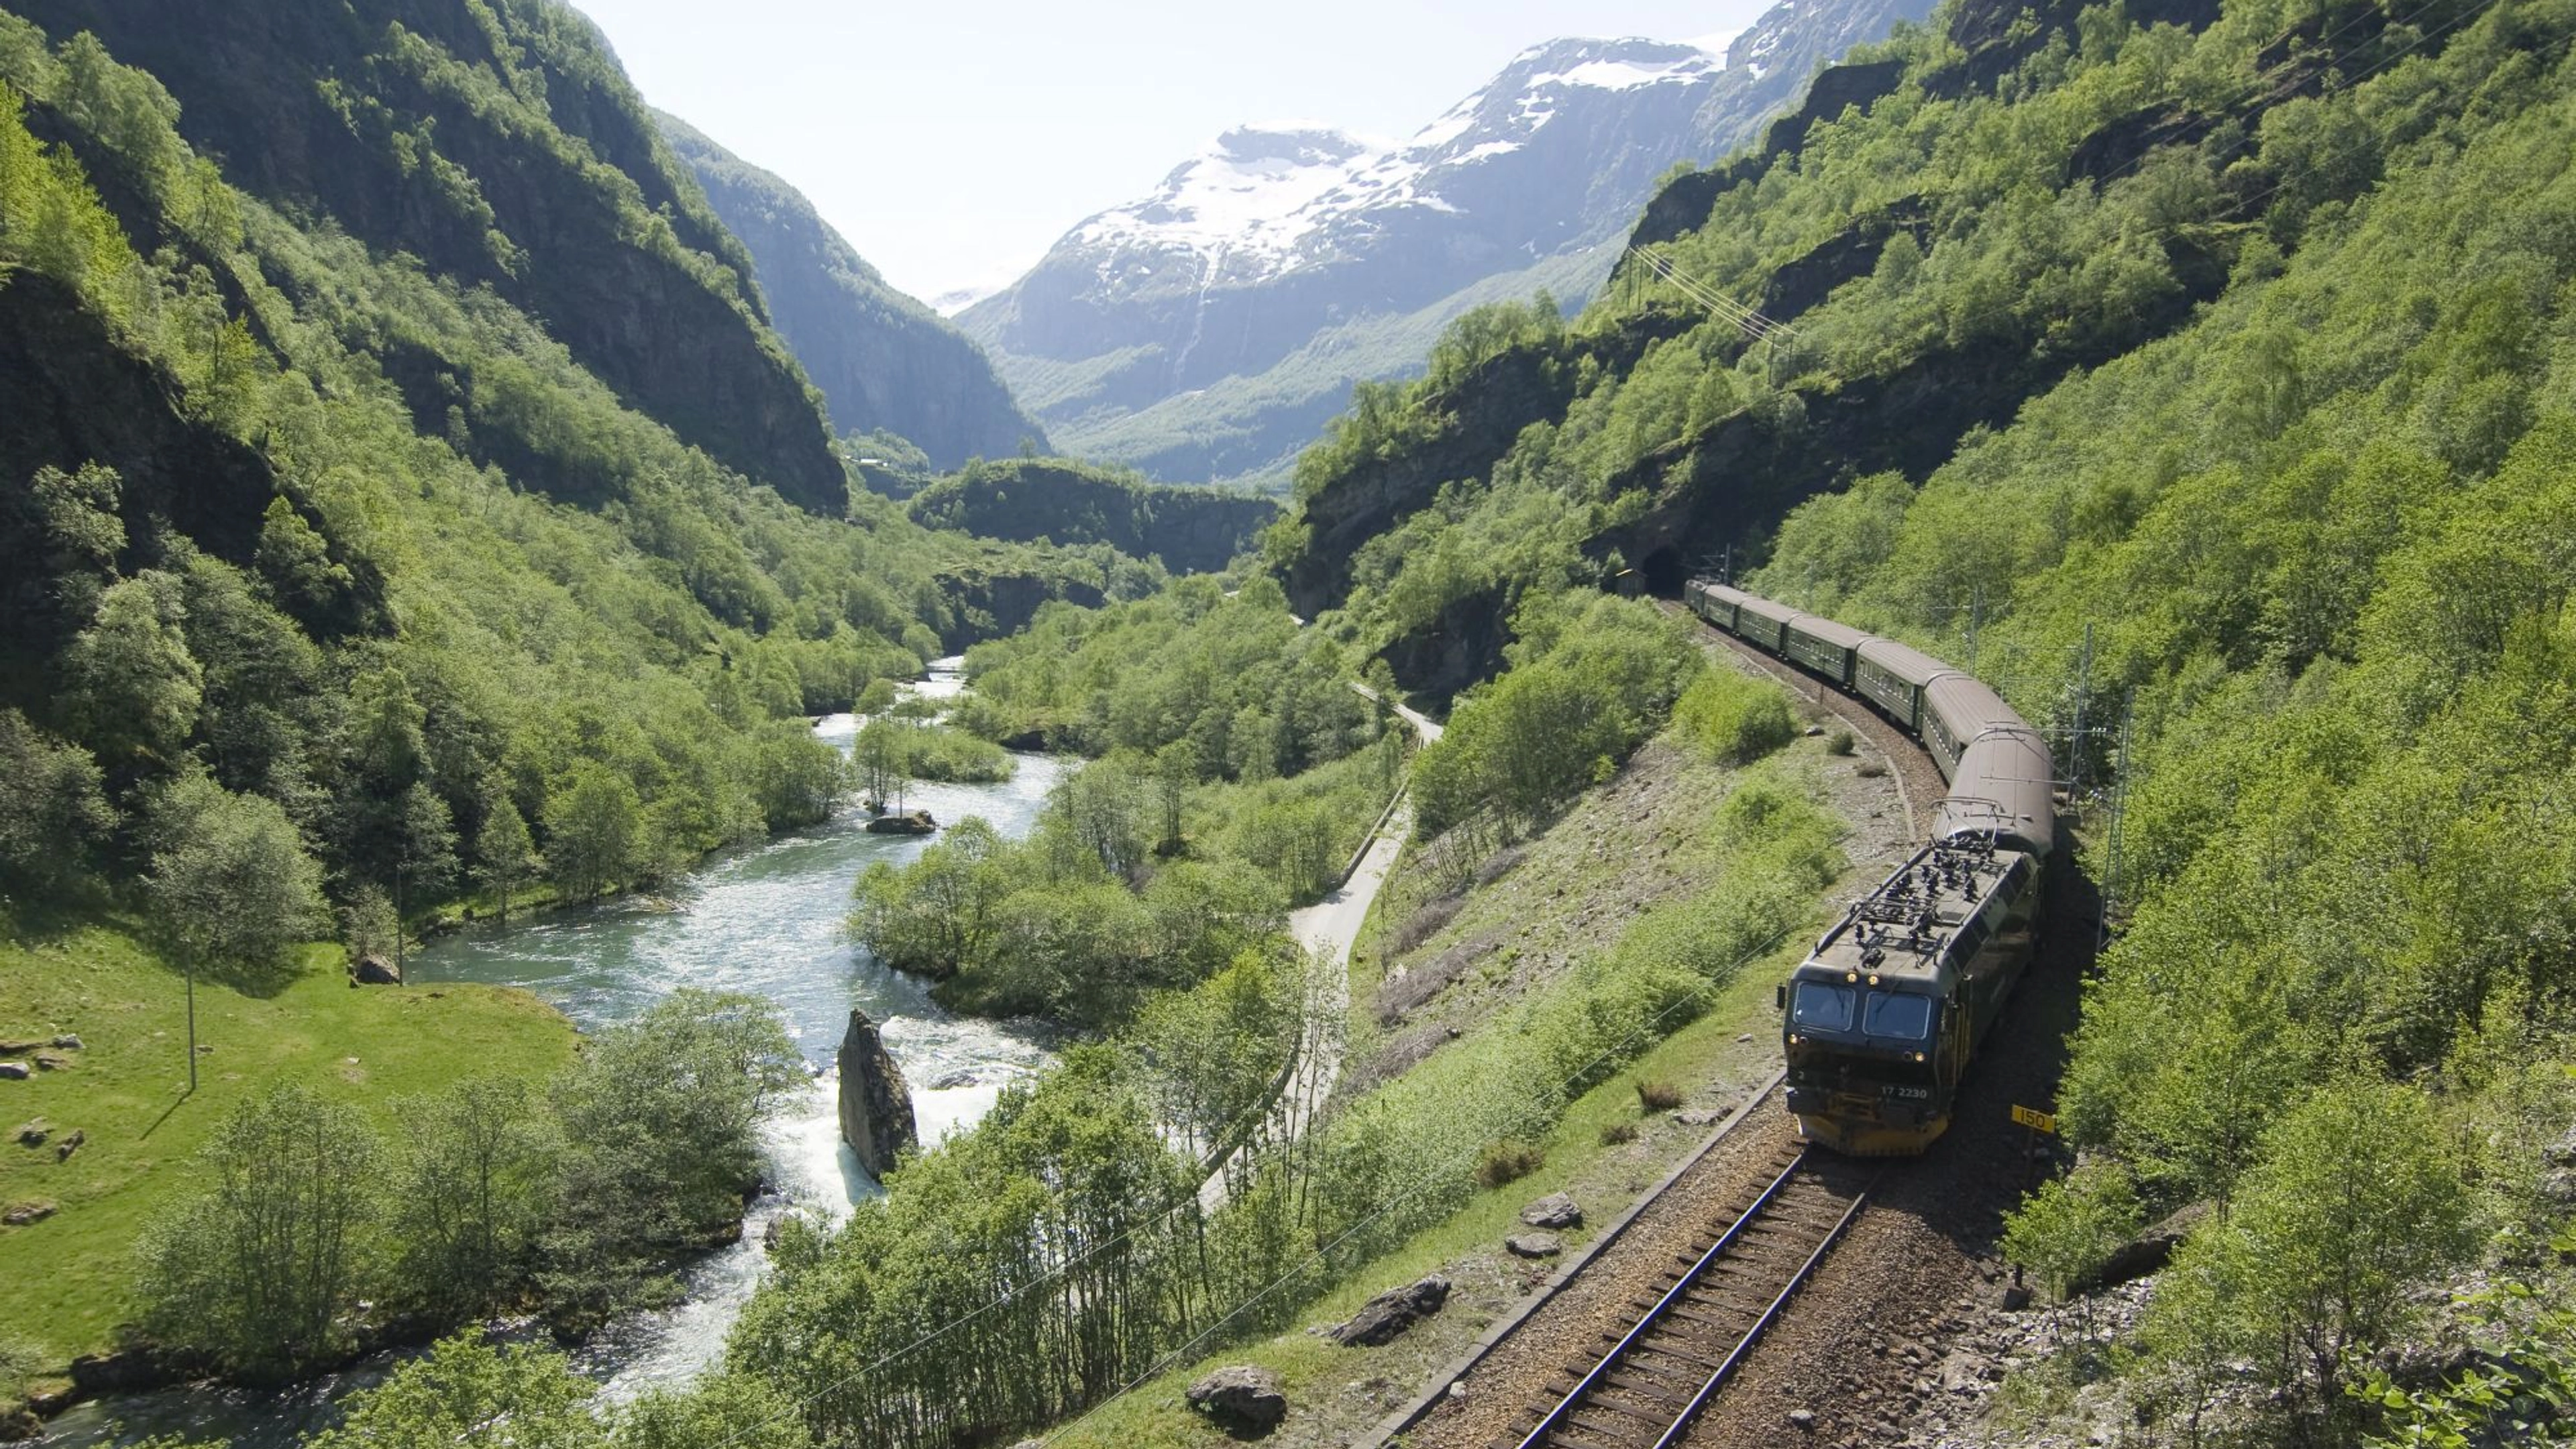 The Flåm Railway -Norway